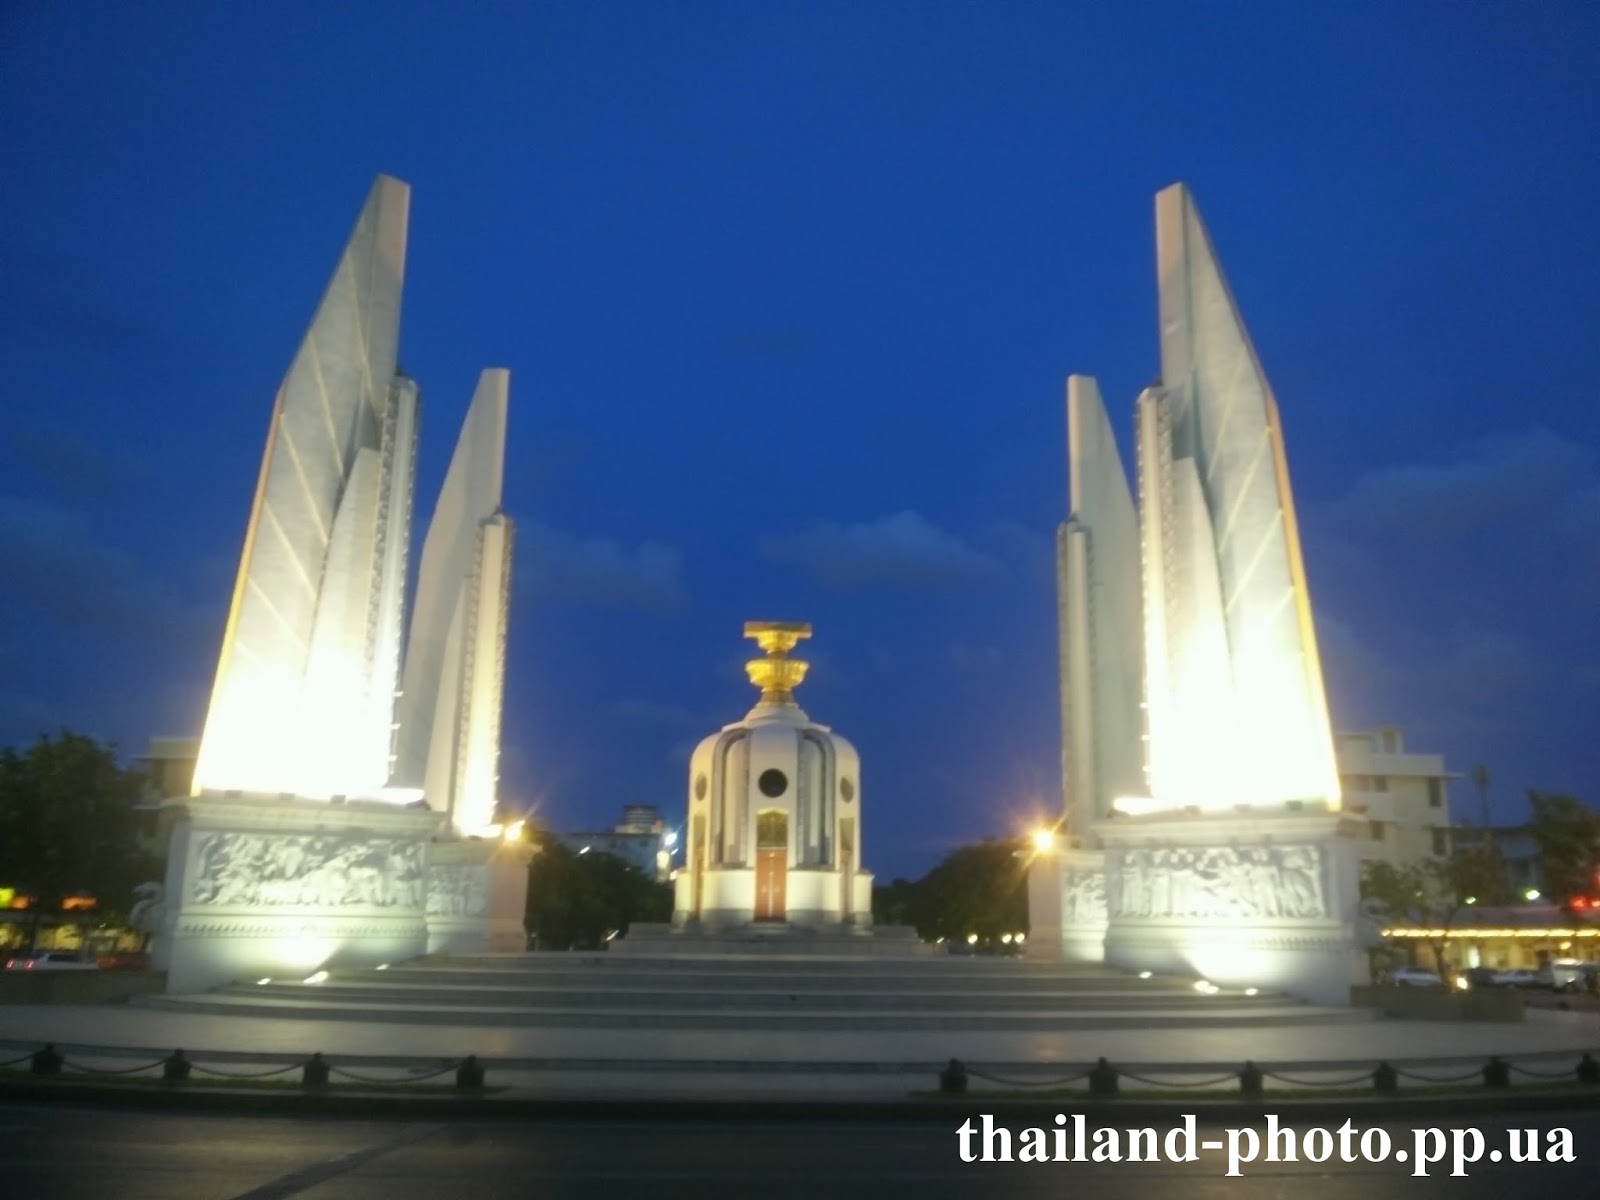 Монумент Демократии вечером с подсветкой